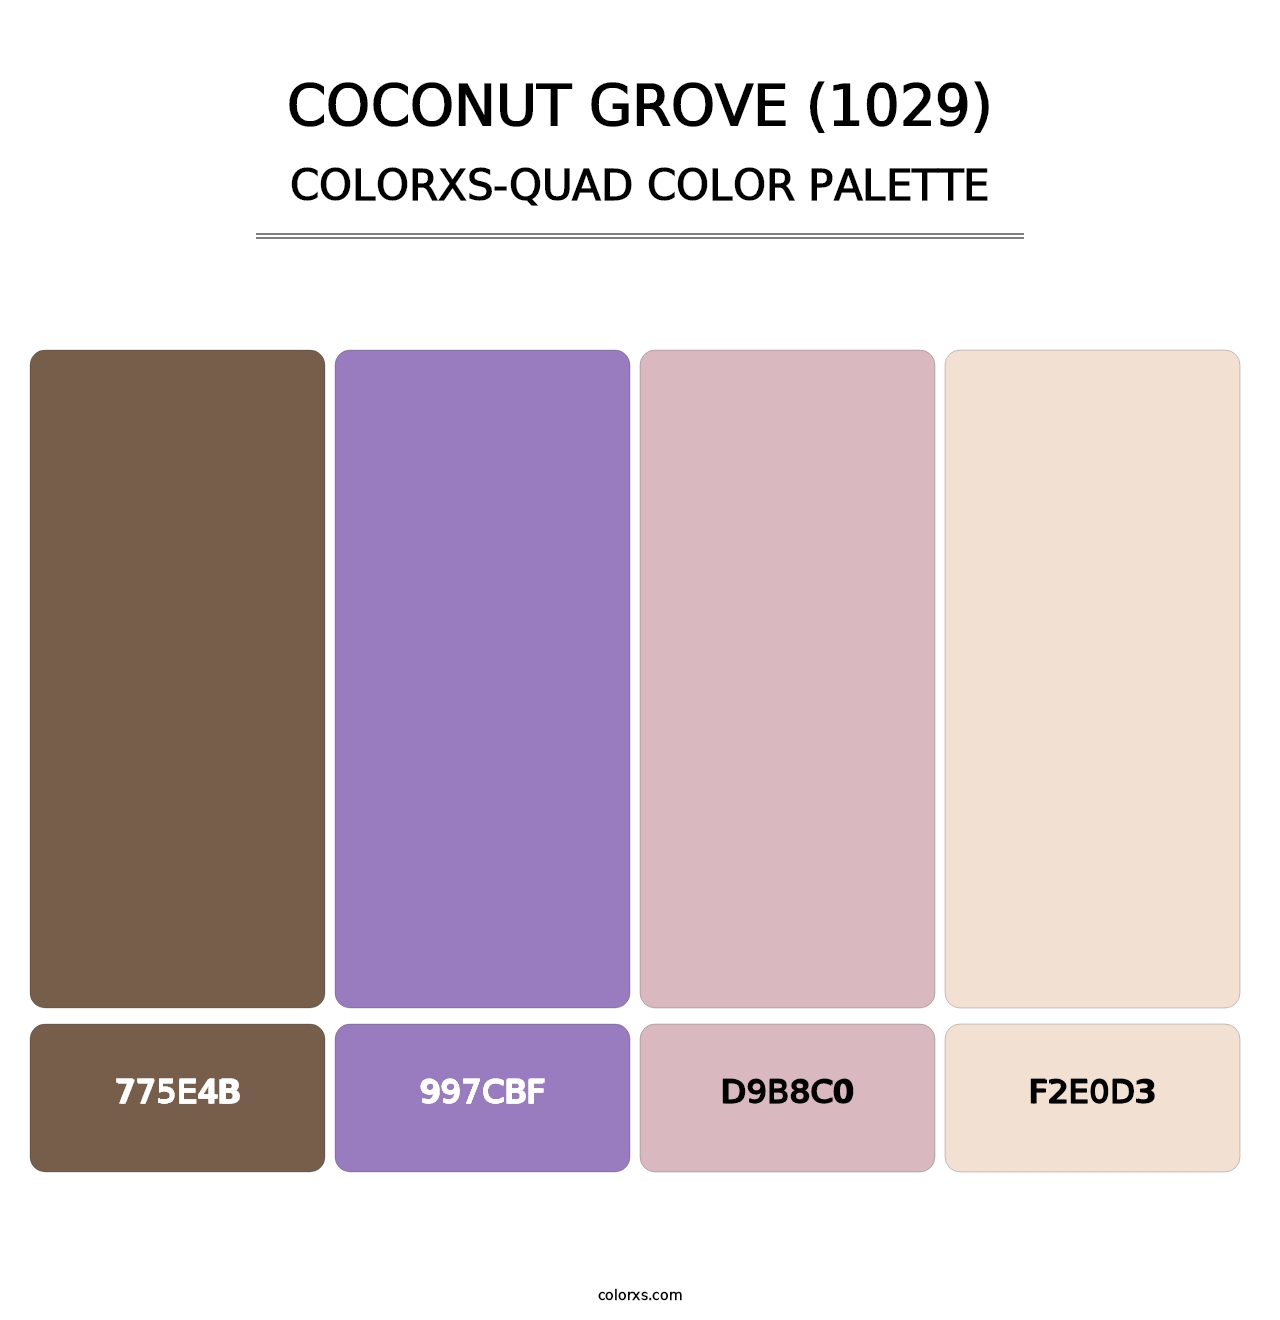 Coconut Grove (1029) - Colorxs Quad Palette